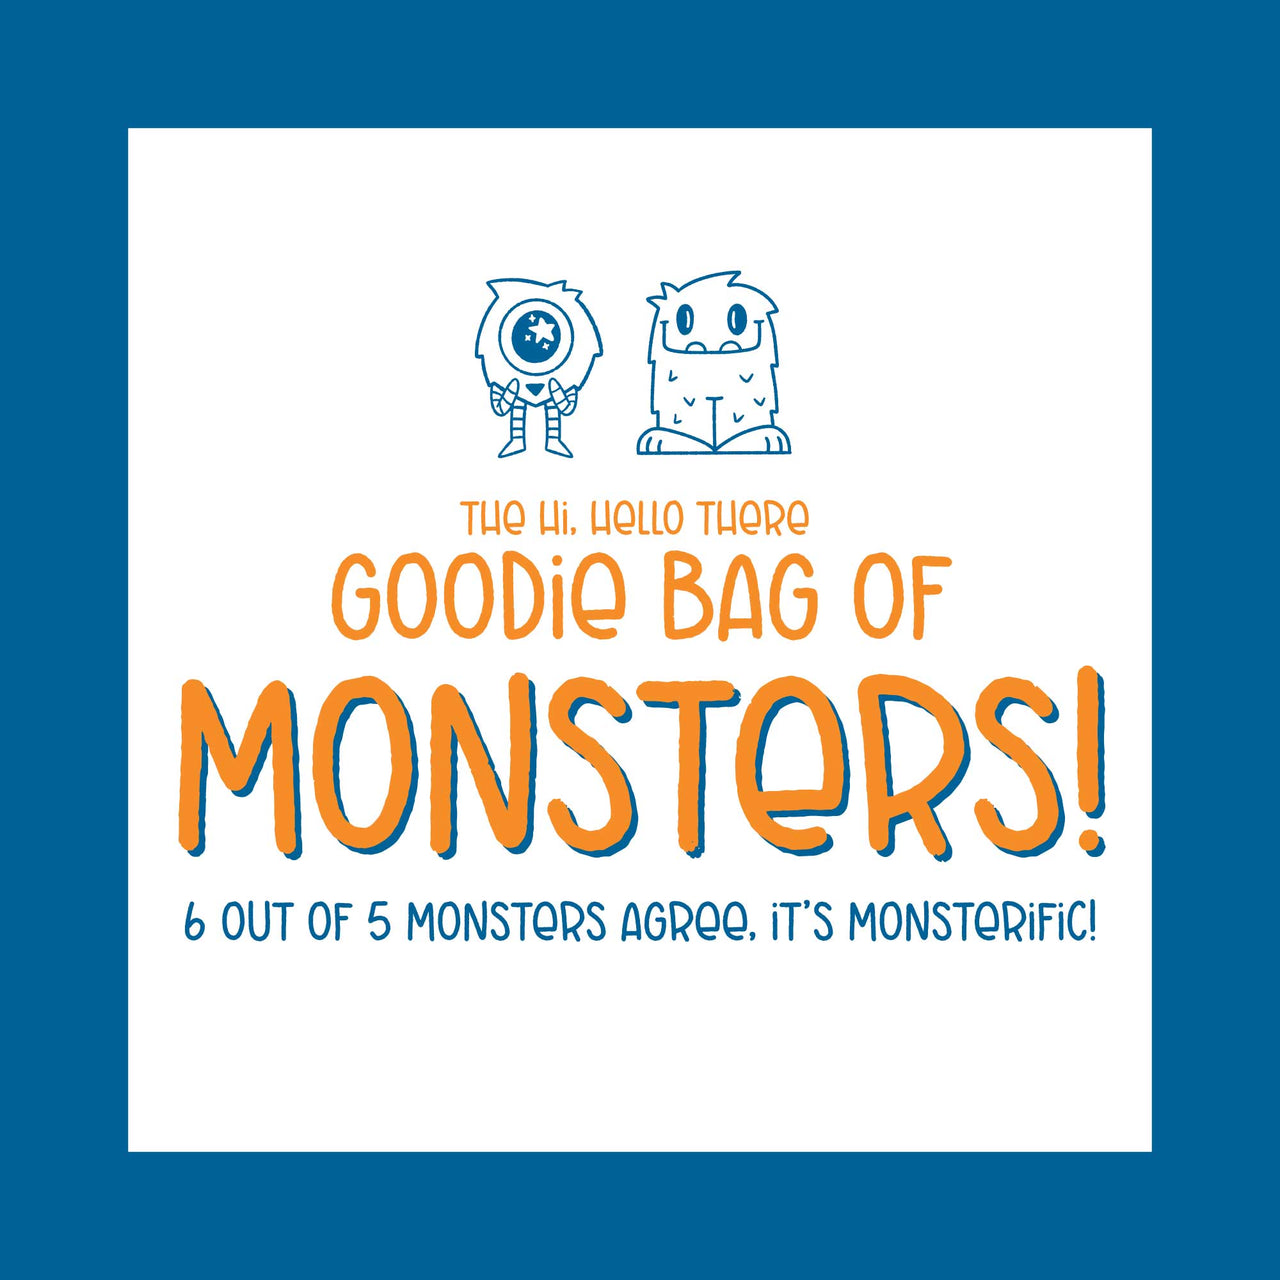 Goodie Bag of Monsters